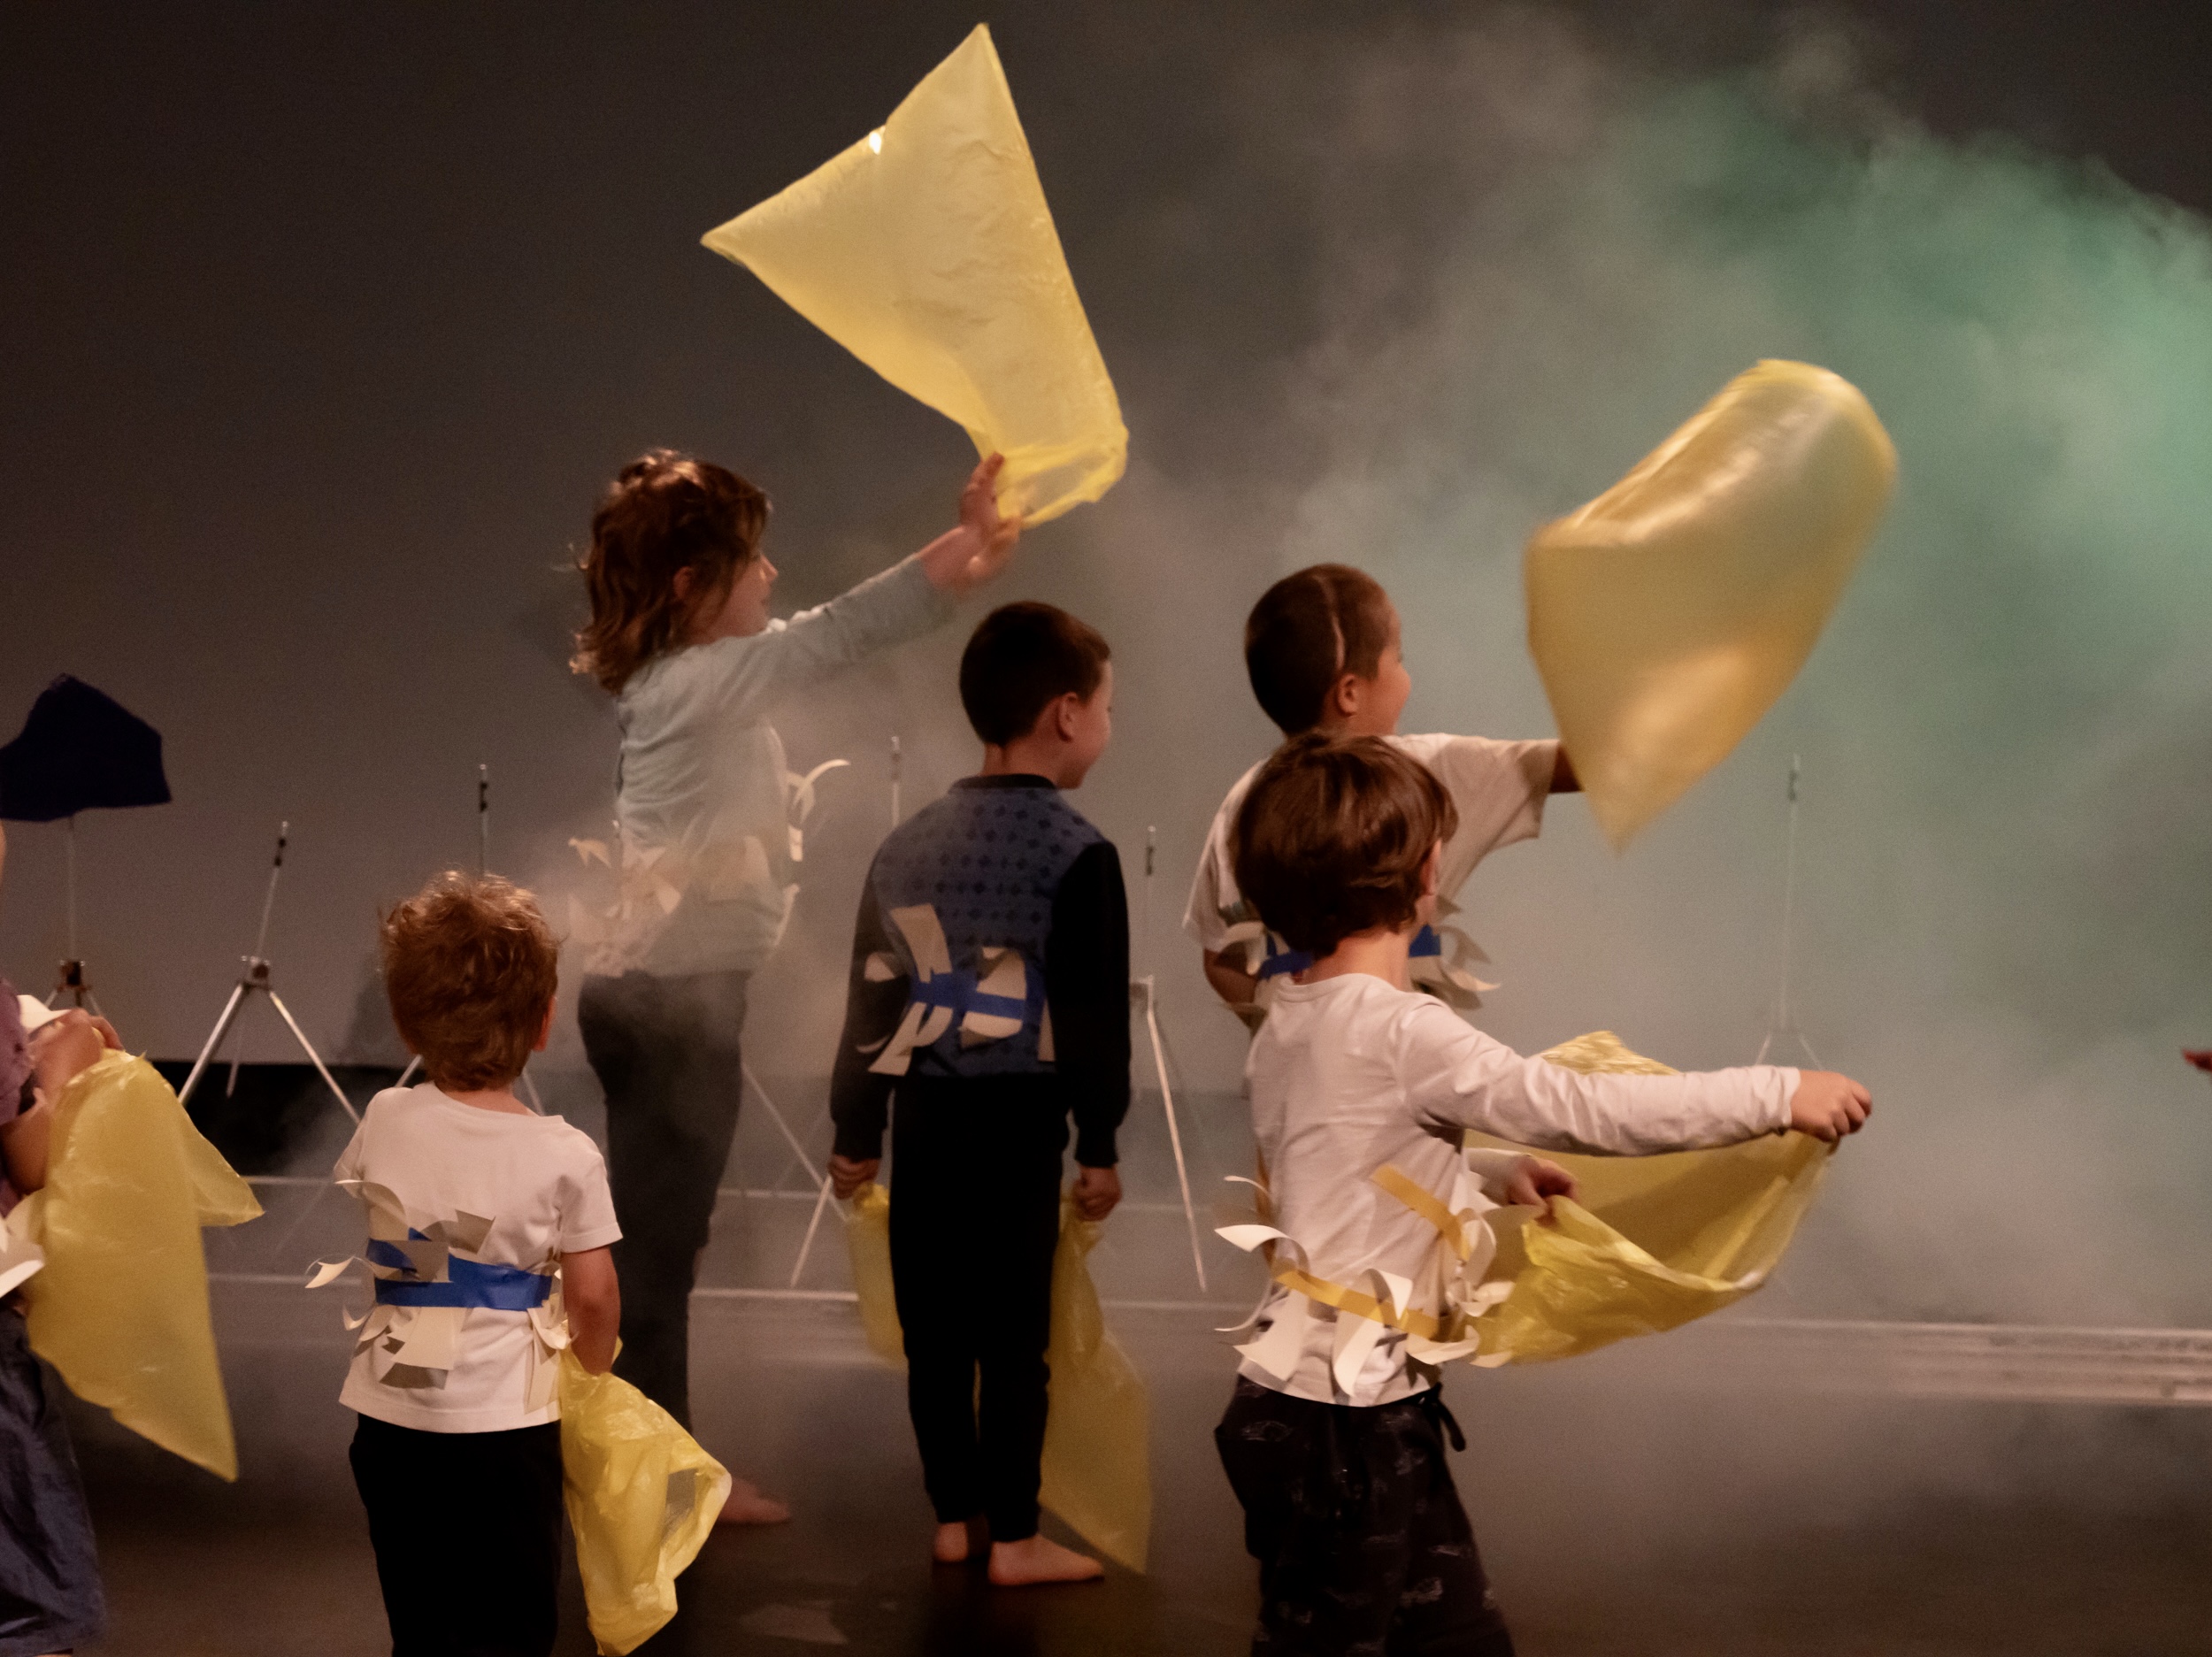 mehrere Kinder fangen Luft in gelbe Plastiktüten ein. Sie speieln in einem Bühnenraum mit gelb grünen Licht und im neben